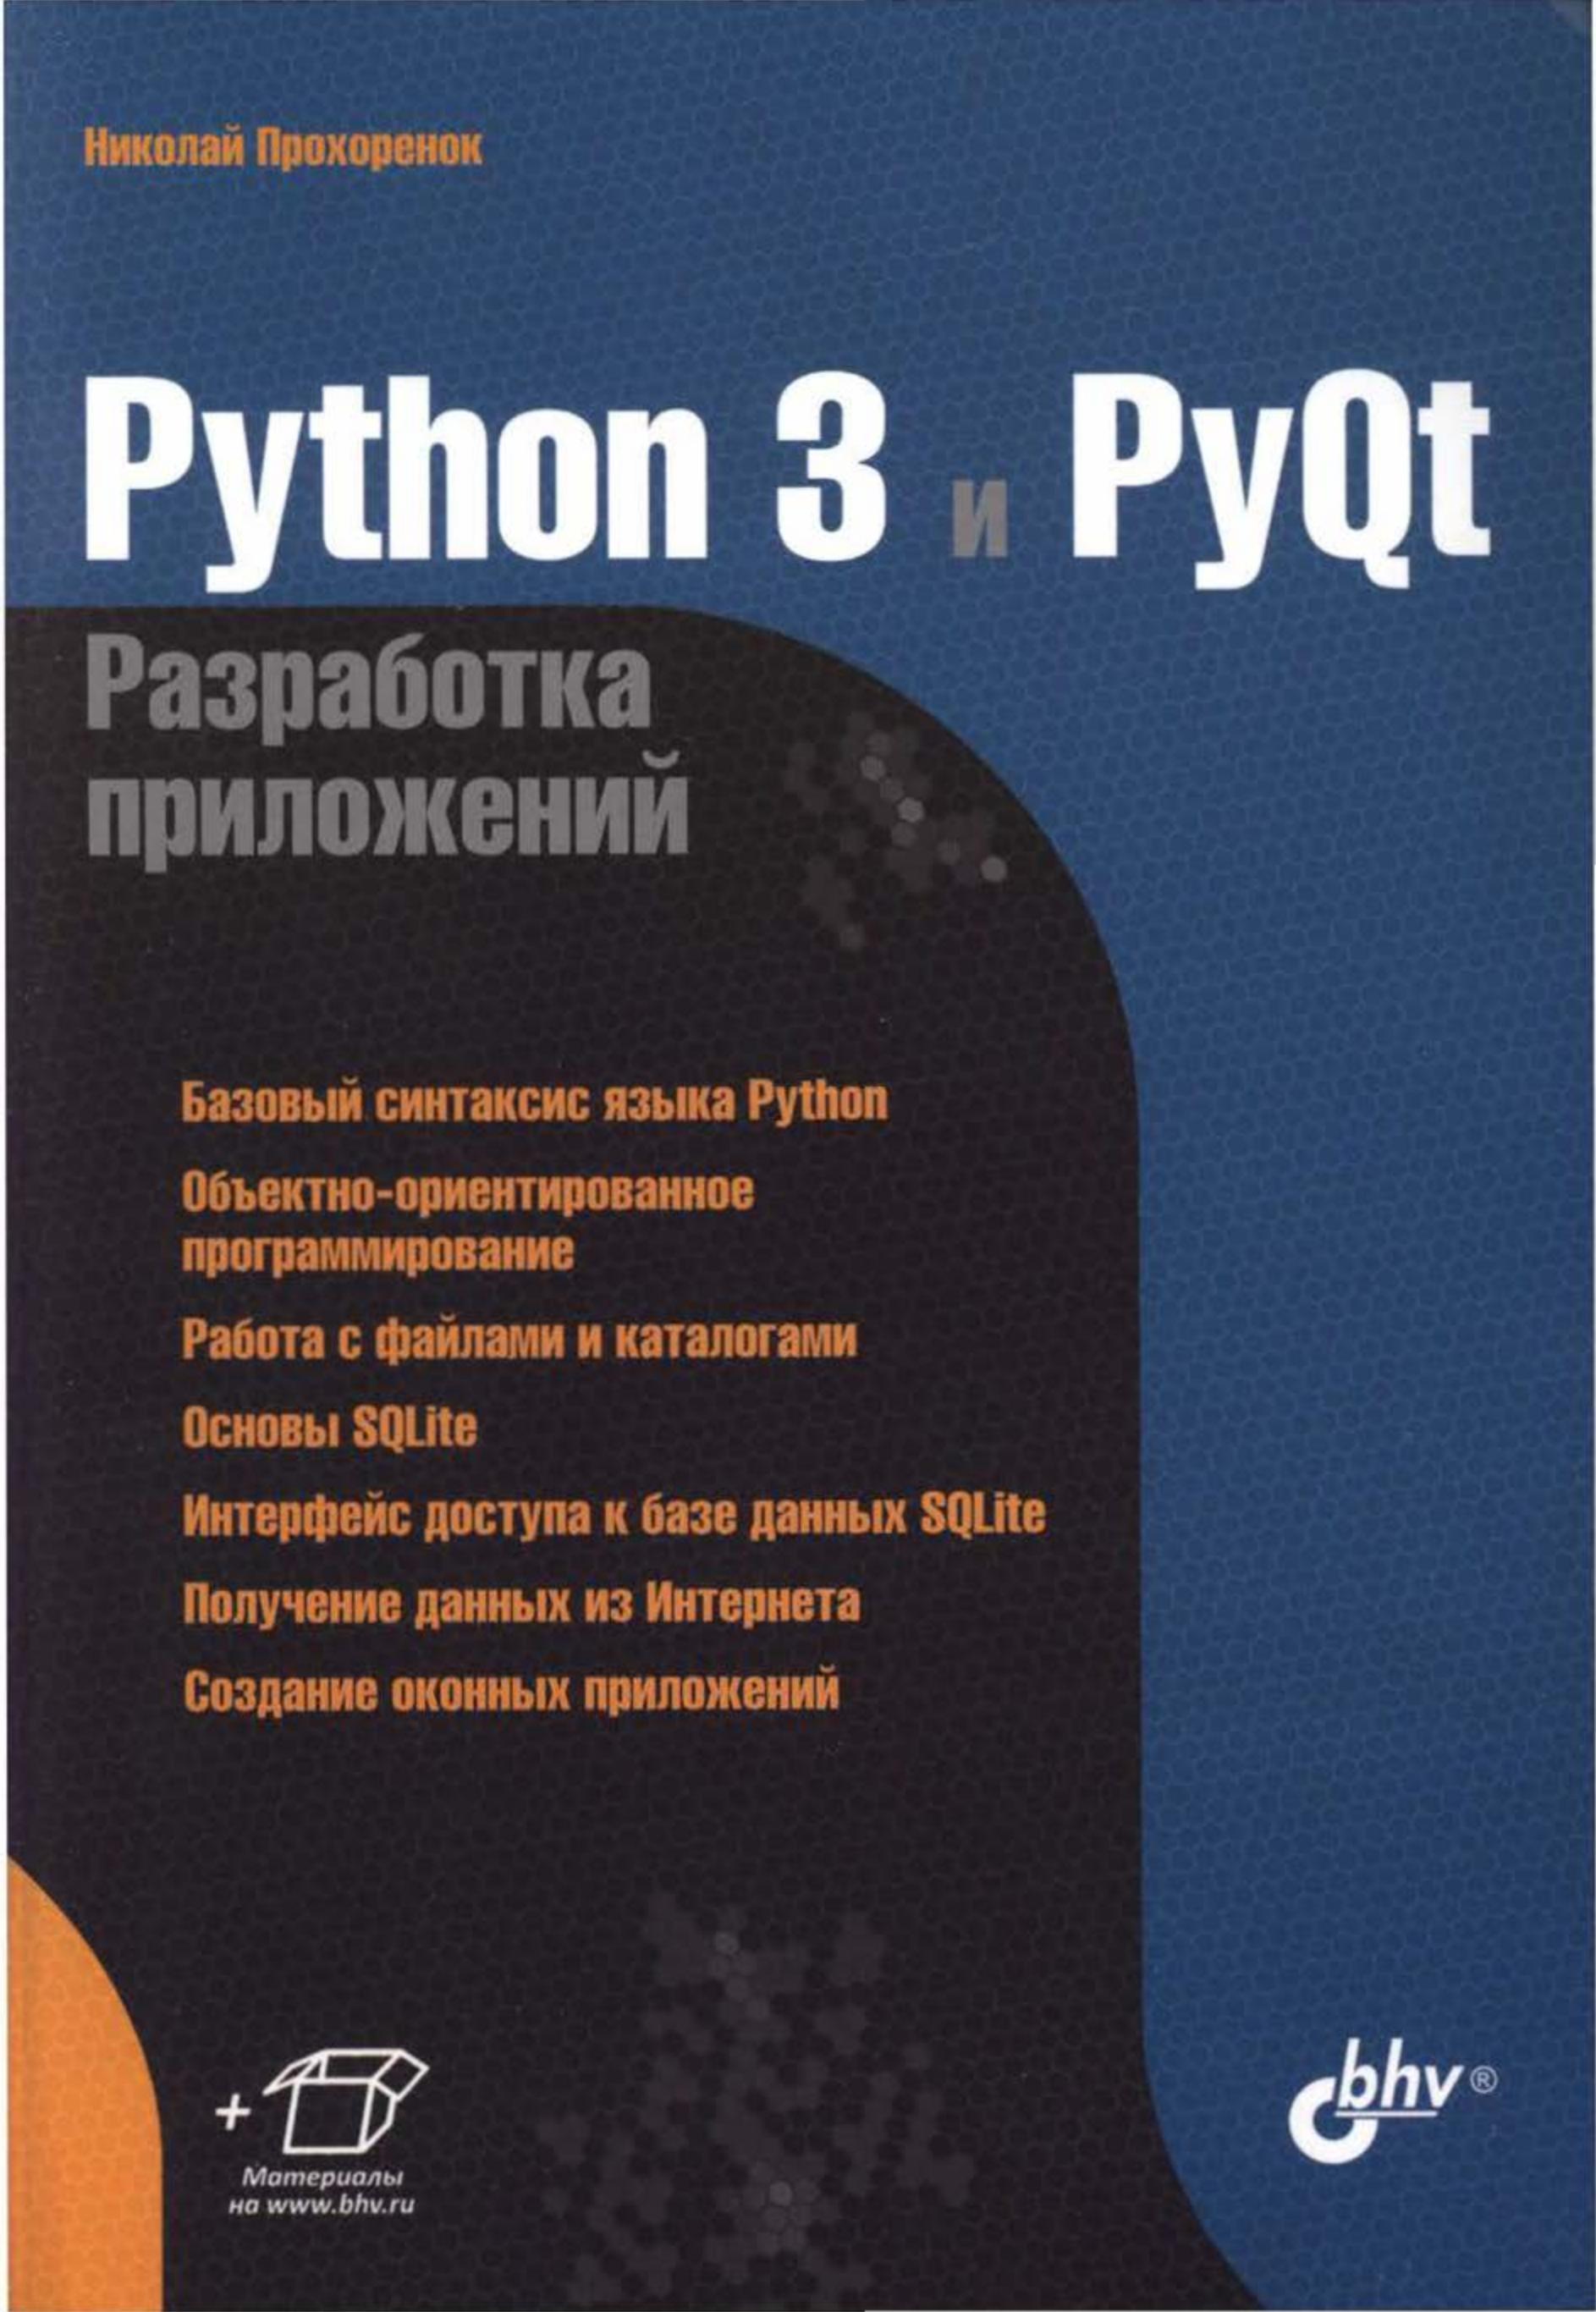 Phyton 3 и PyQt разработка приложений, 2012, Николай Прохоренок